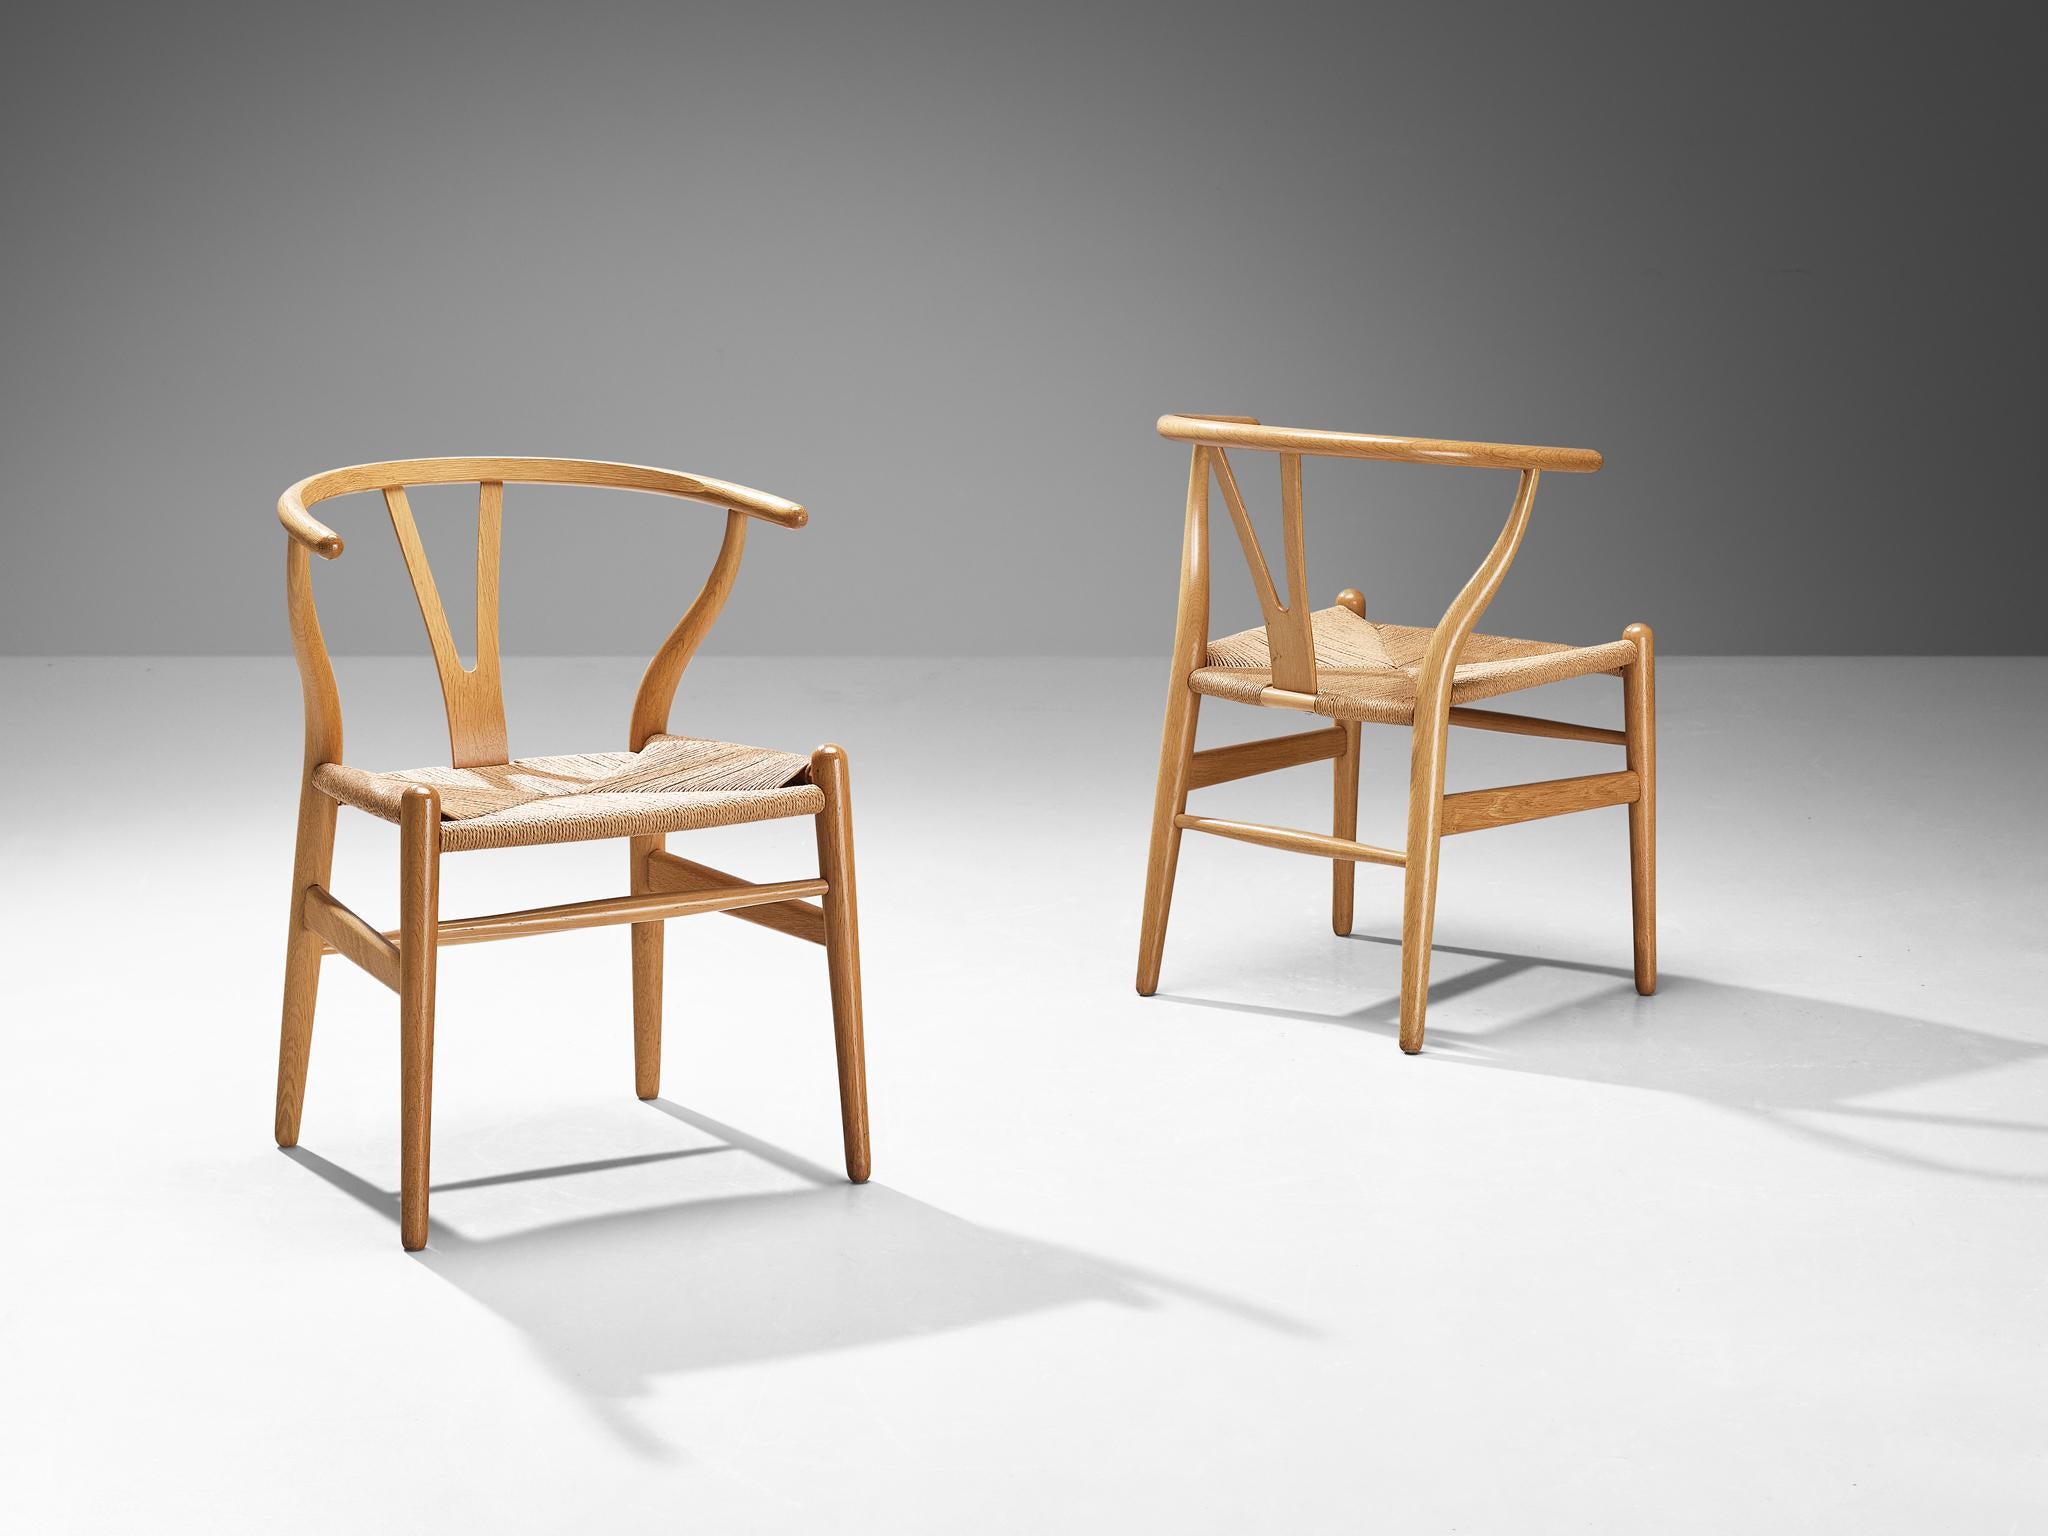 Hans J. Wegner pour Carl Hansen & Søn, paire de chaises 'Wishbone', modèle 'CH24', chêne, corde de papier, Danemark, design 1950, production après

La chaise Wishbone est l'un des modèles les plus connus et les plus célèbres de Hans Wegner. Un